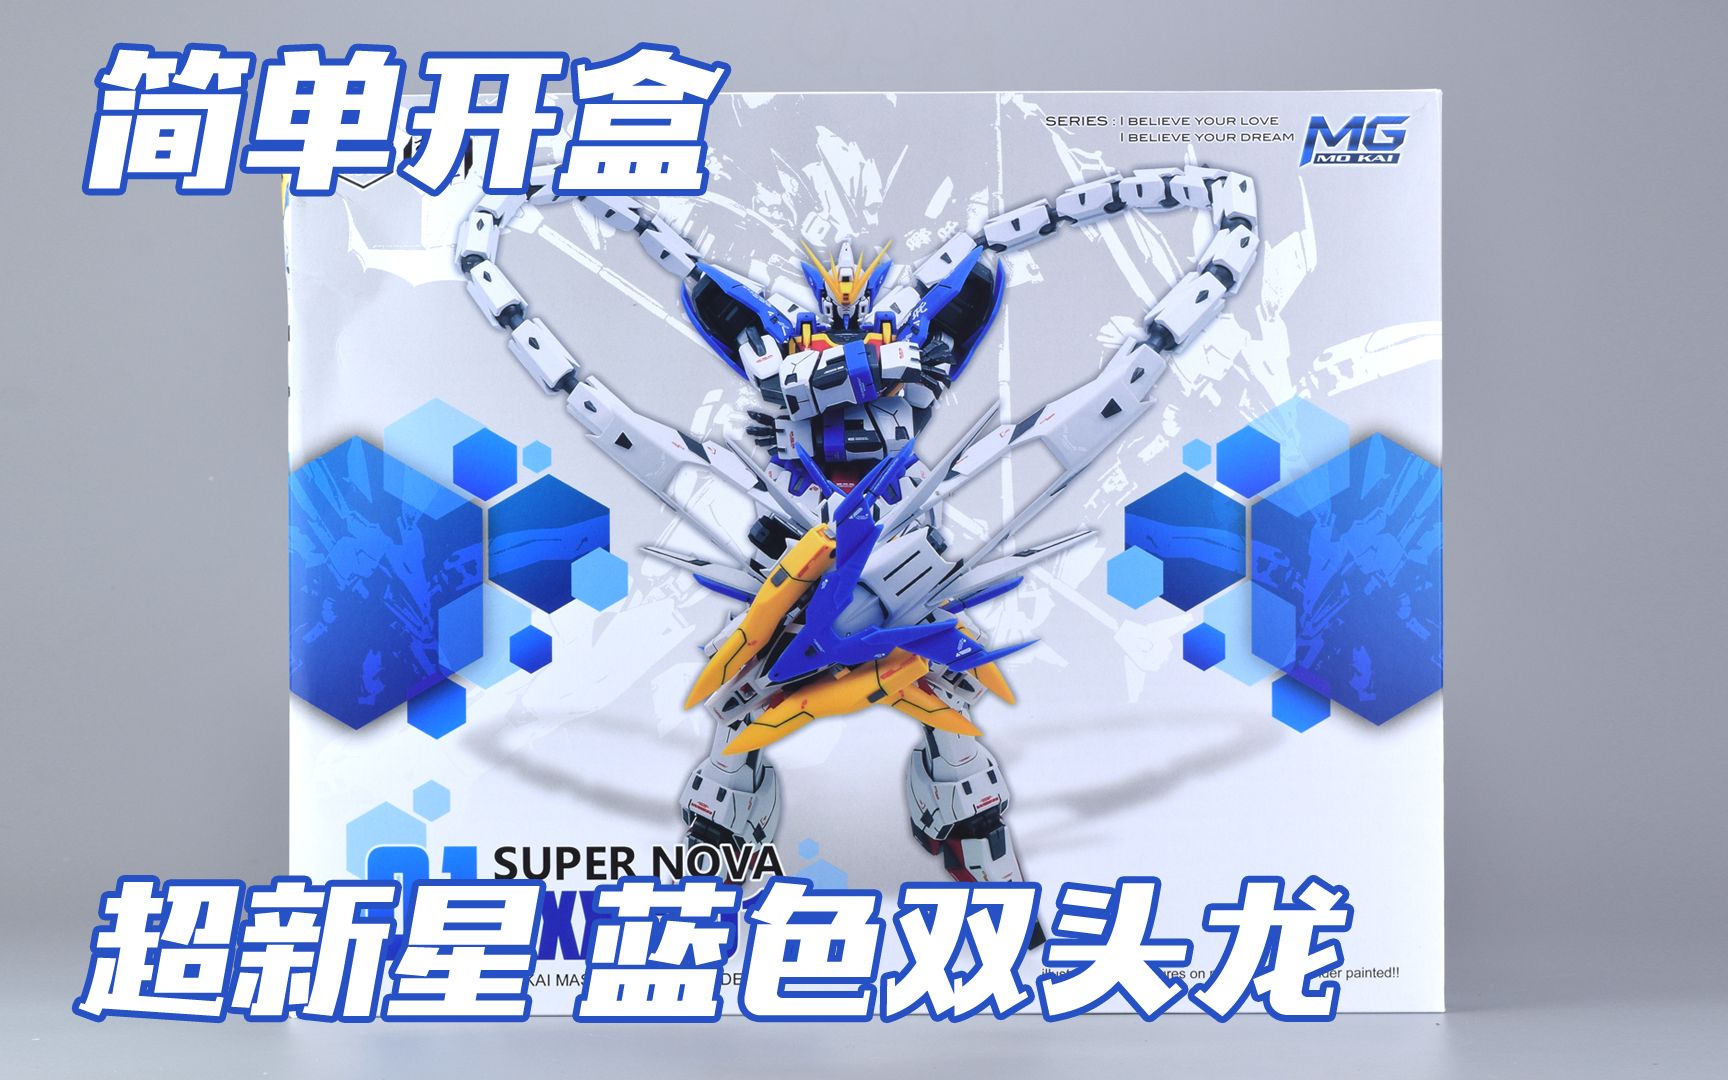 超新星 mg 蓝色版双头龙 蓝龙 高达模型板件属性